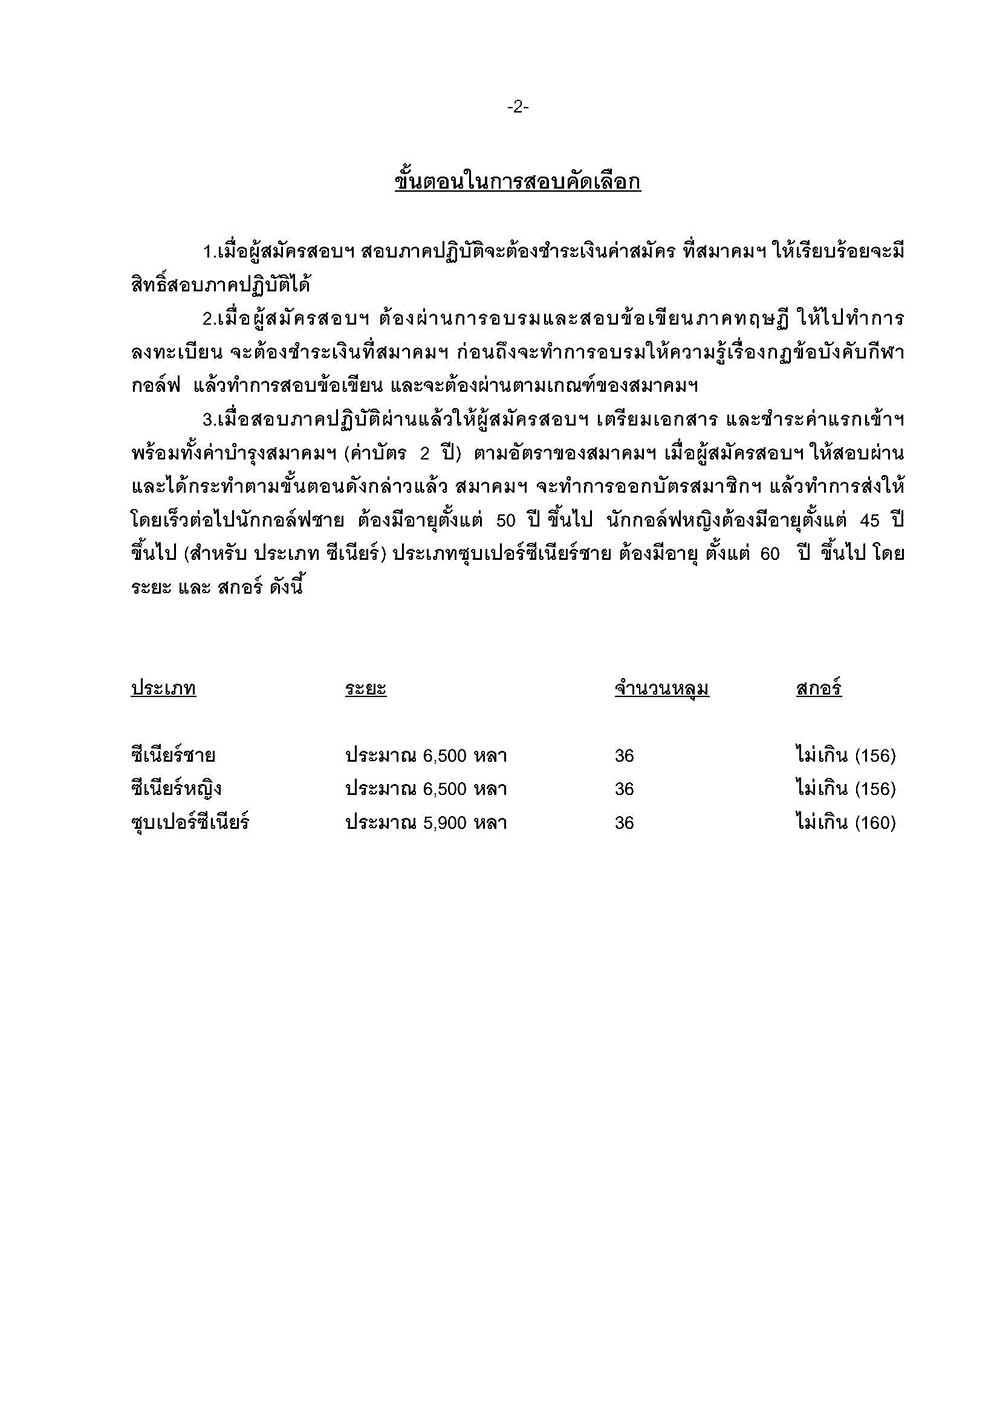 หนงสอสอบภาษาไทย อาทตยา 11 12 พ.ย 02